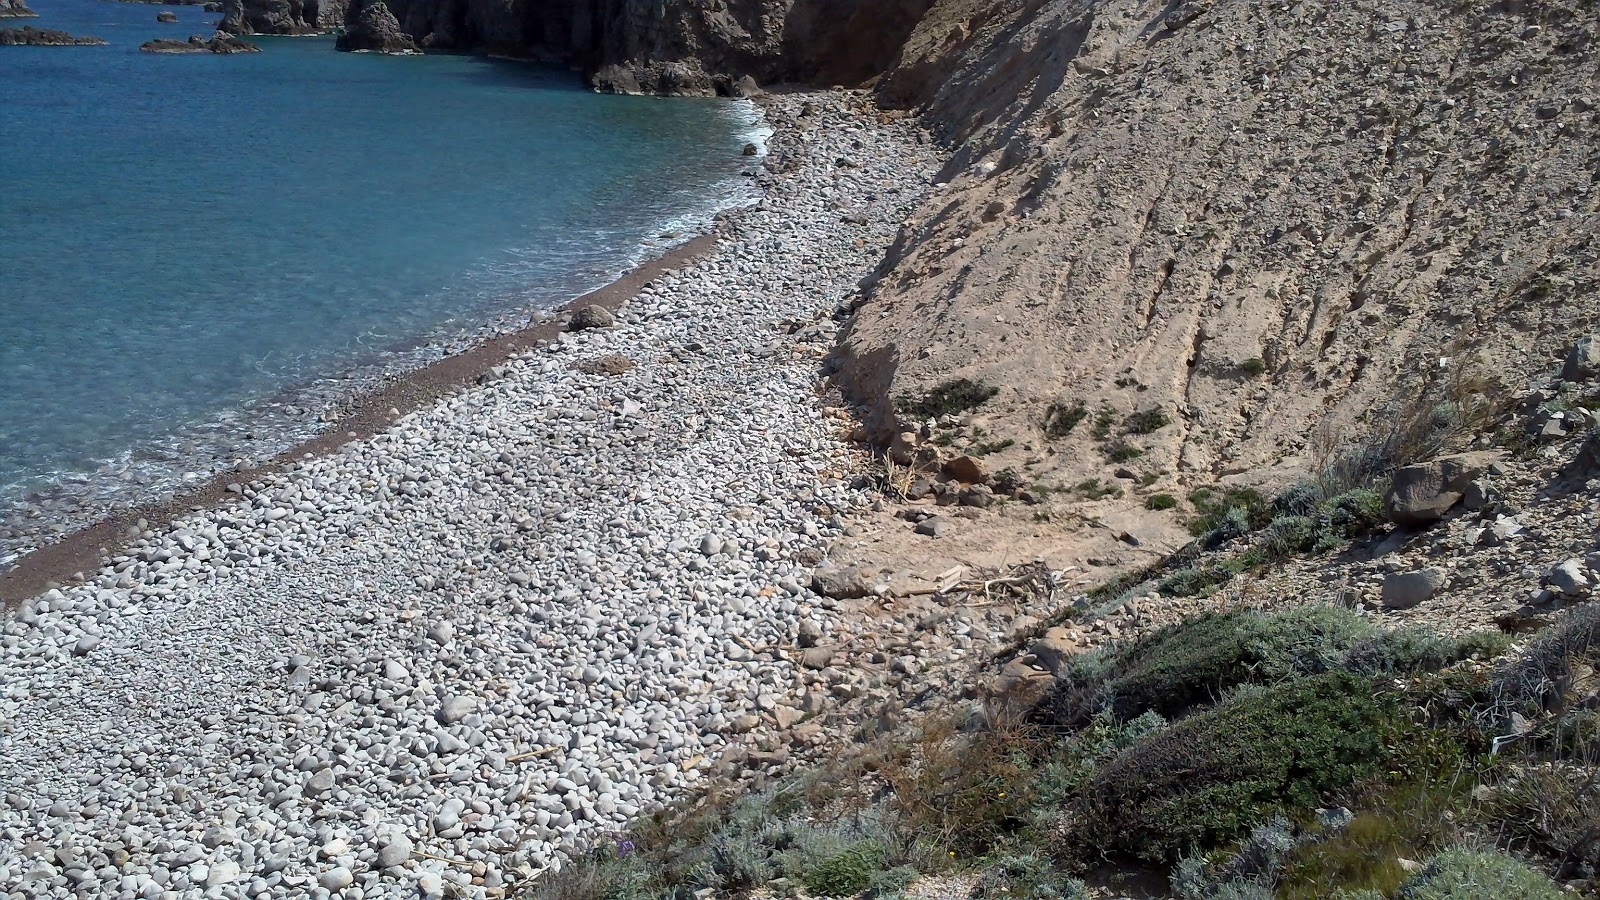 Foto von Tourkothalassa beach wilde gegend